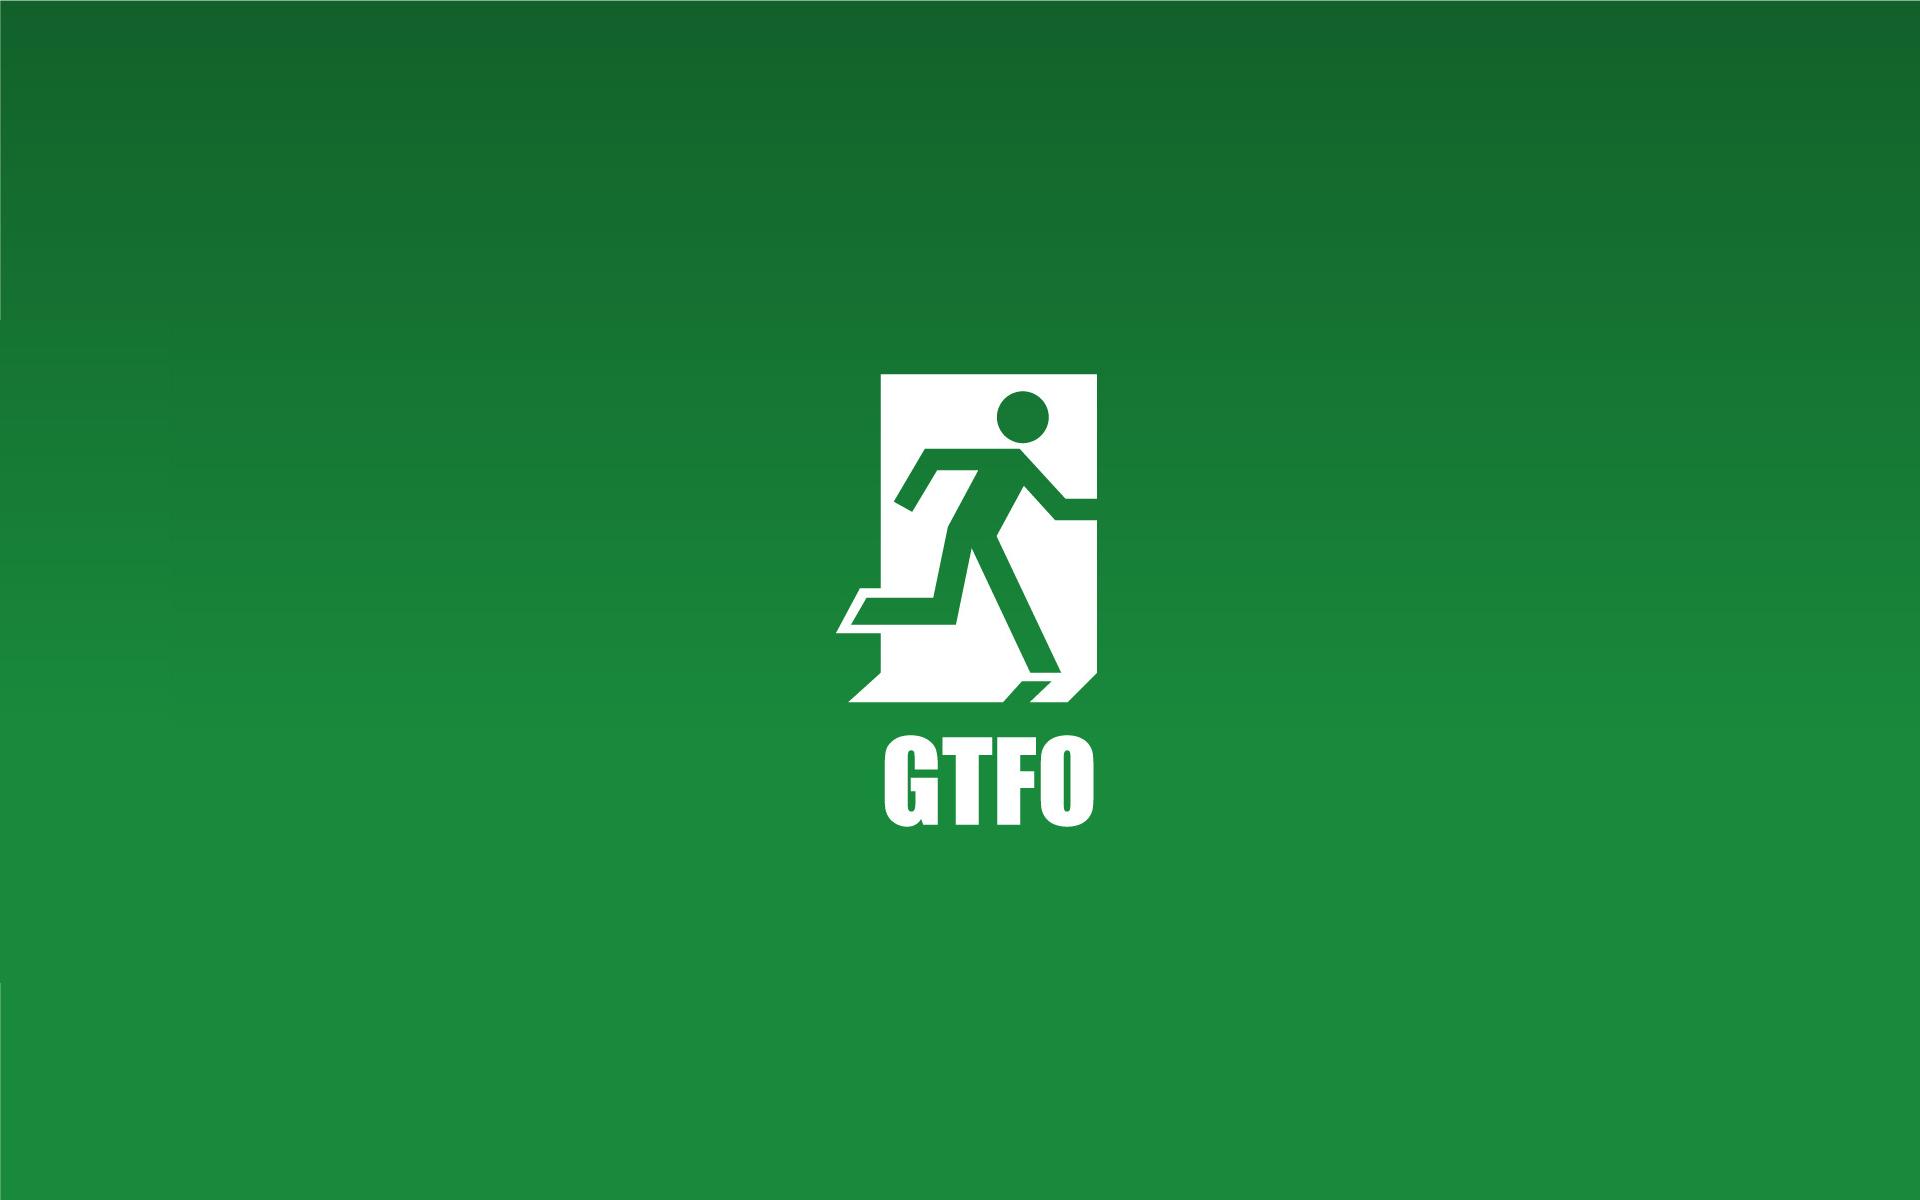 GTFO - desktop wallpaper